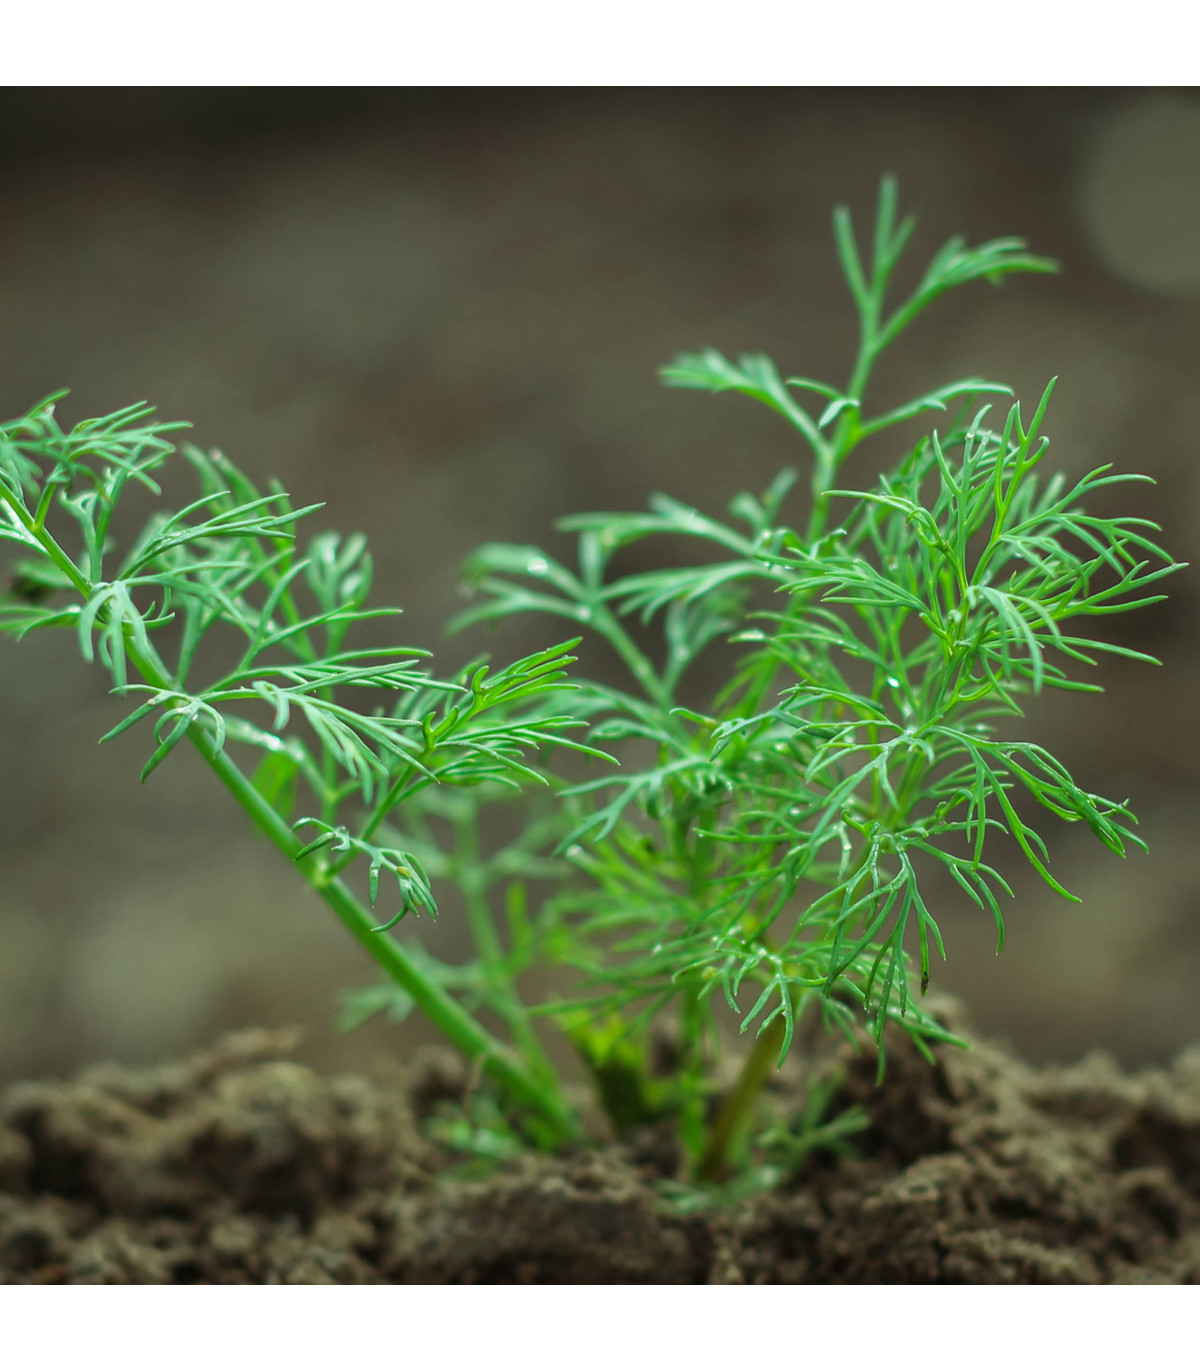 BIO kôpor voňavý Hera - Anethum graveolens - bio semená kôpru - 1 g